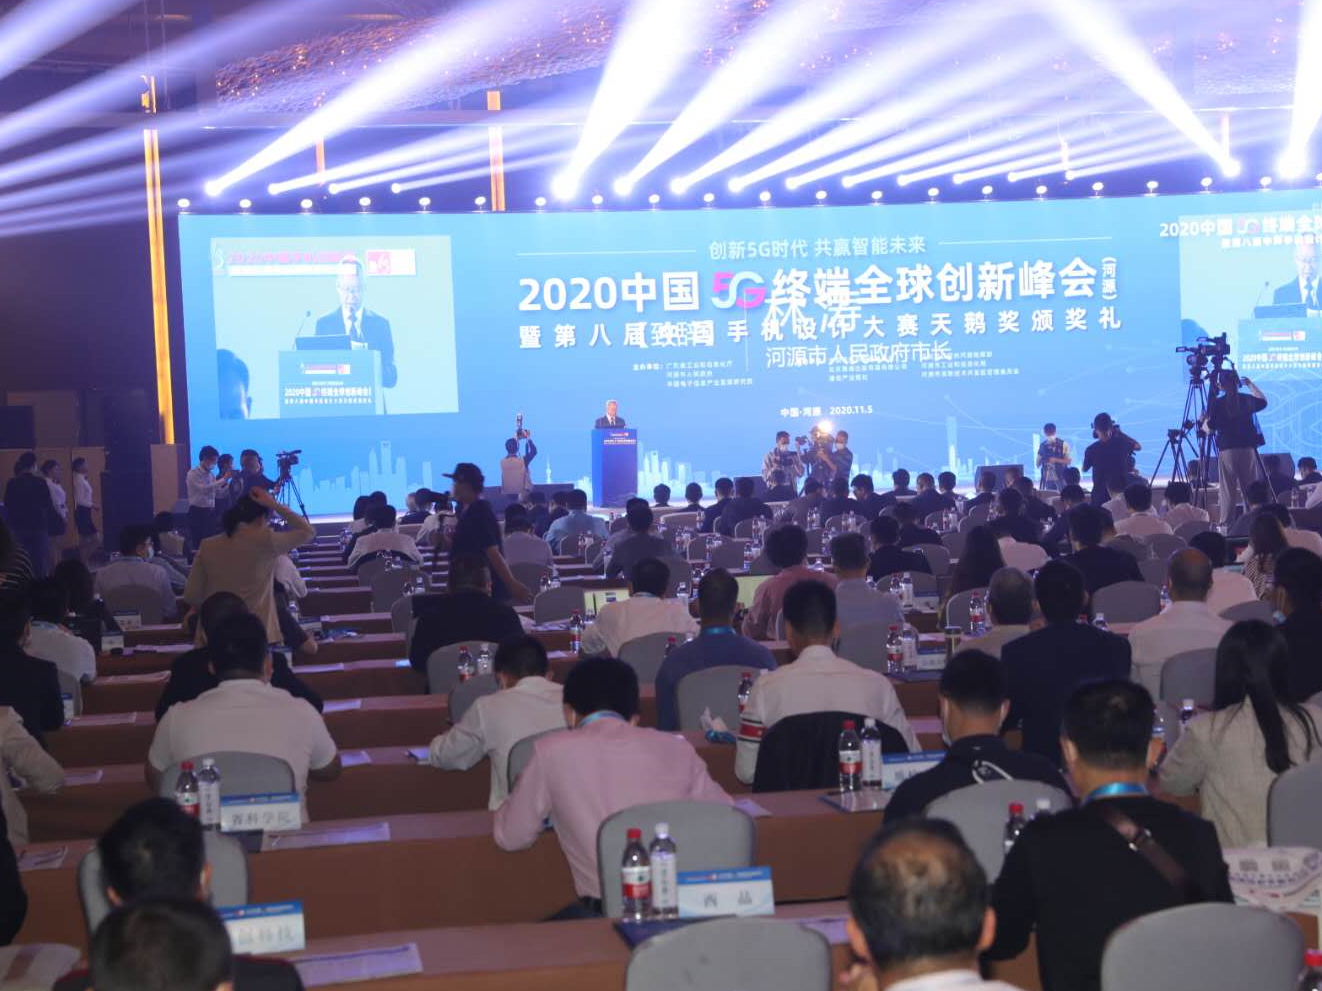 中国手机天鹅奖在河源揭晓  同期举行2020中国5G终端全球创新峰会，发布5G终端产业白皮书